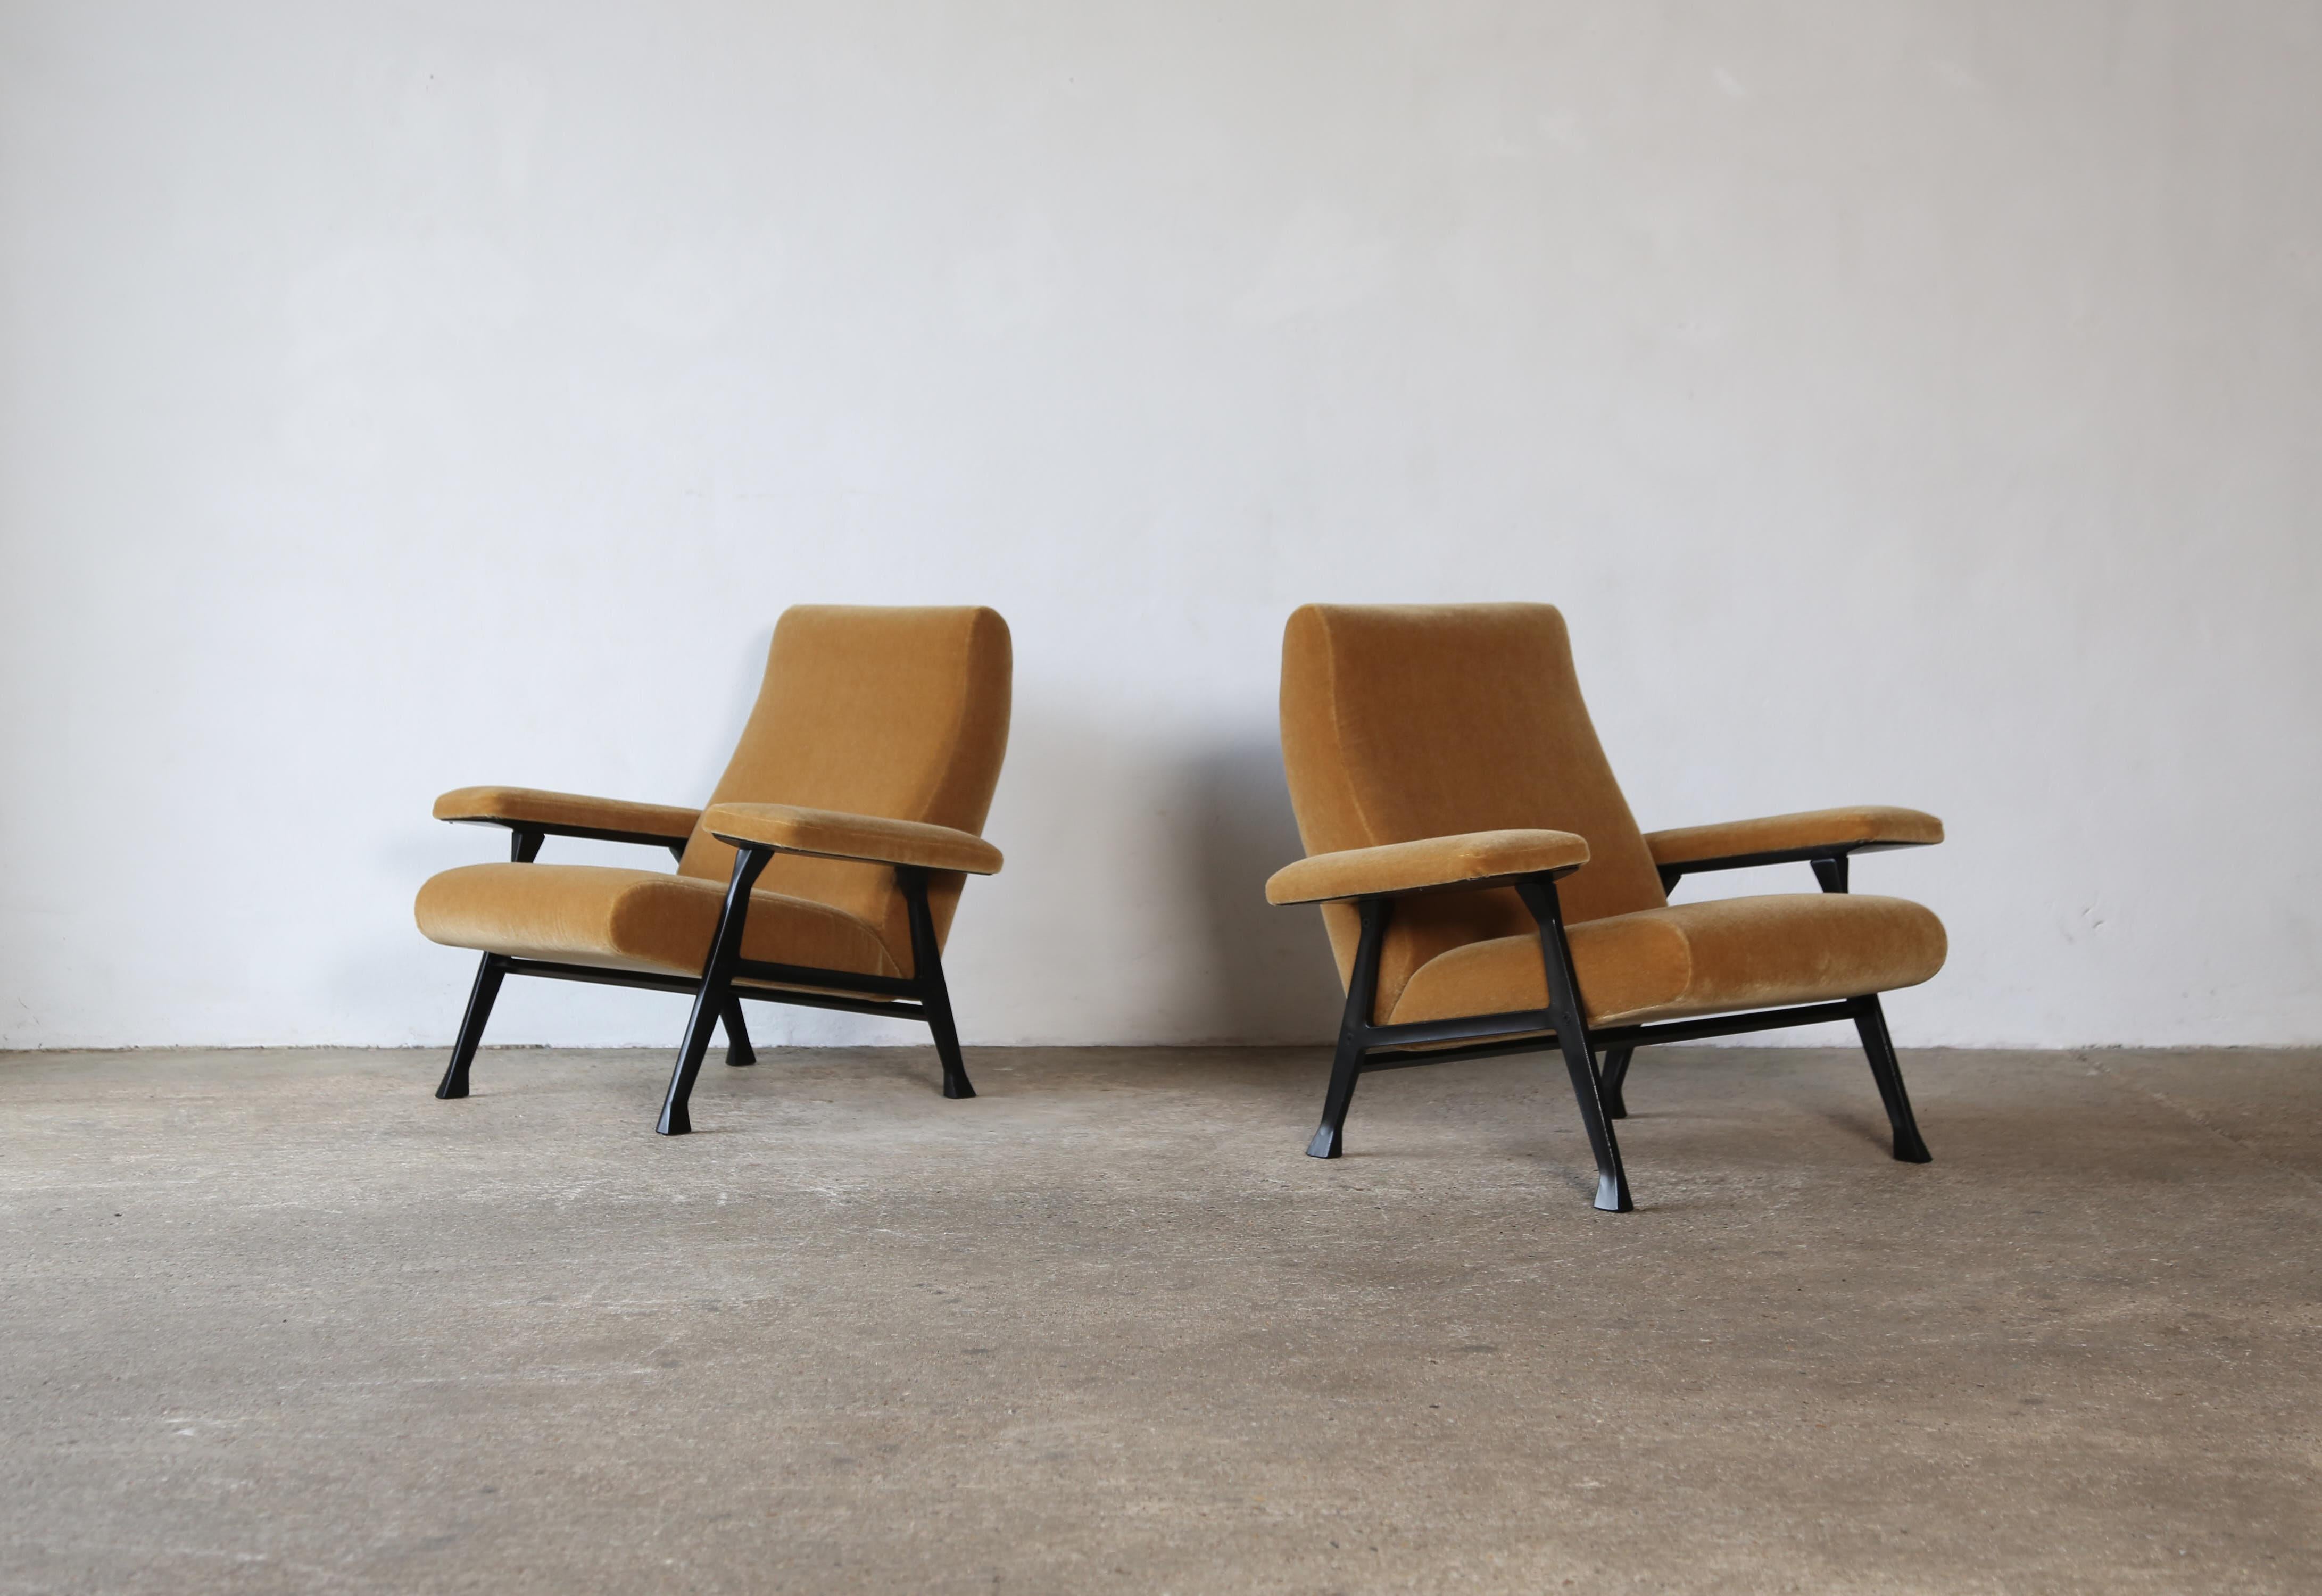 Paire originale de chaises Roberto Menghi Hall, produites par Arflex, Italie, années 1950. Nouvellement revêtu d'un tissu en mohair pur de première qualité, de couleur jaune d'or.  Les cadres métalliques ont été restaurés et repeints. Ces chaises